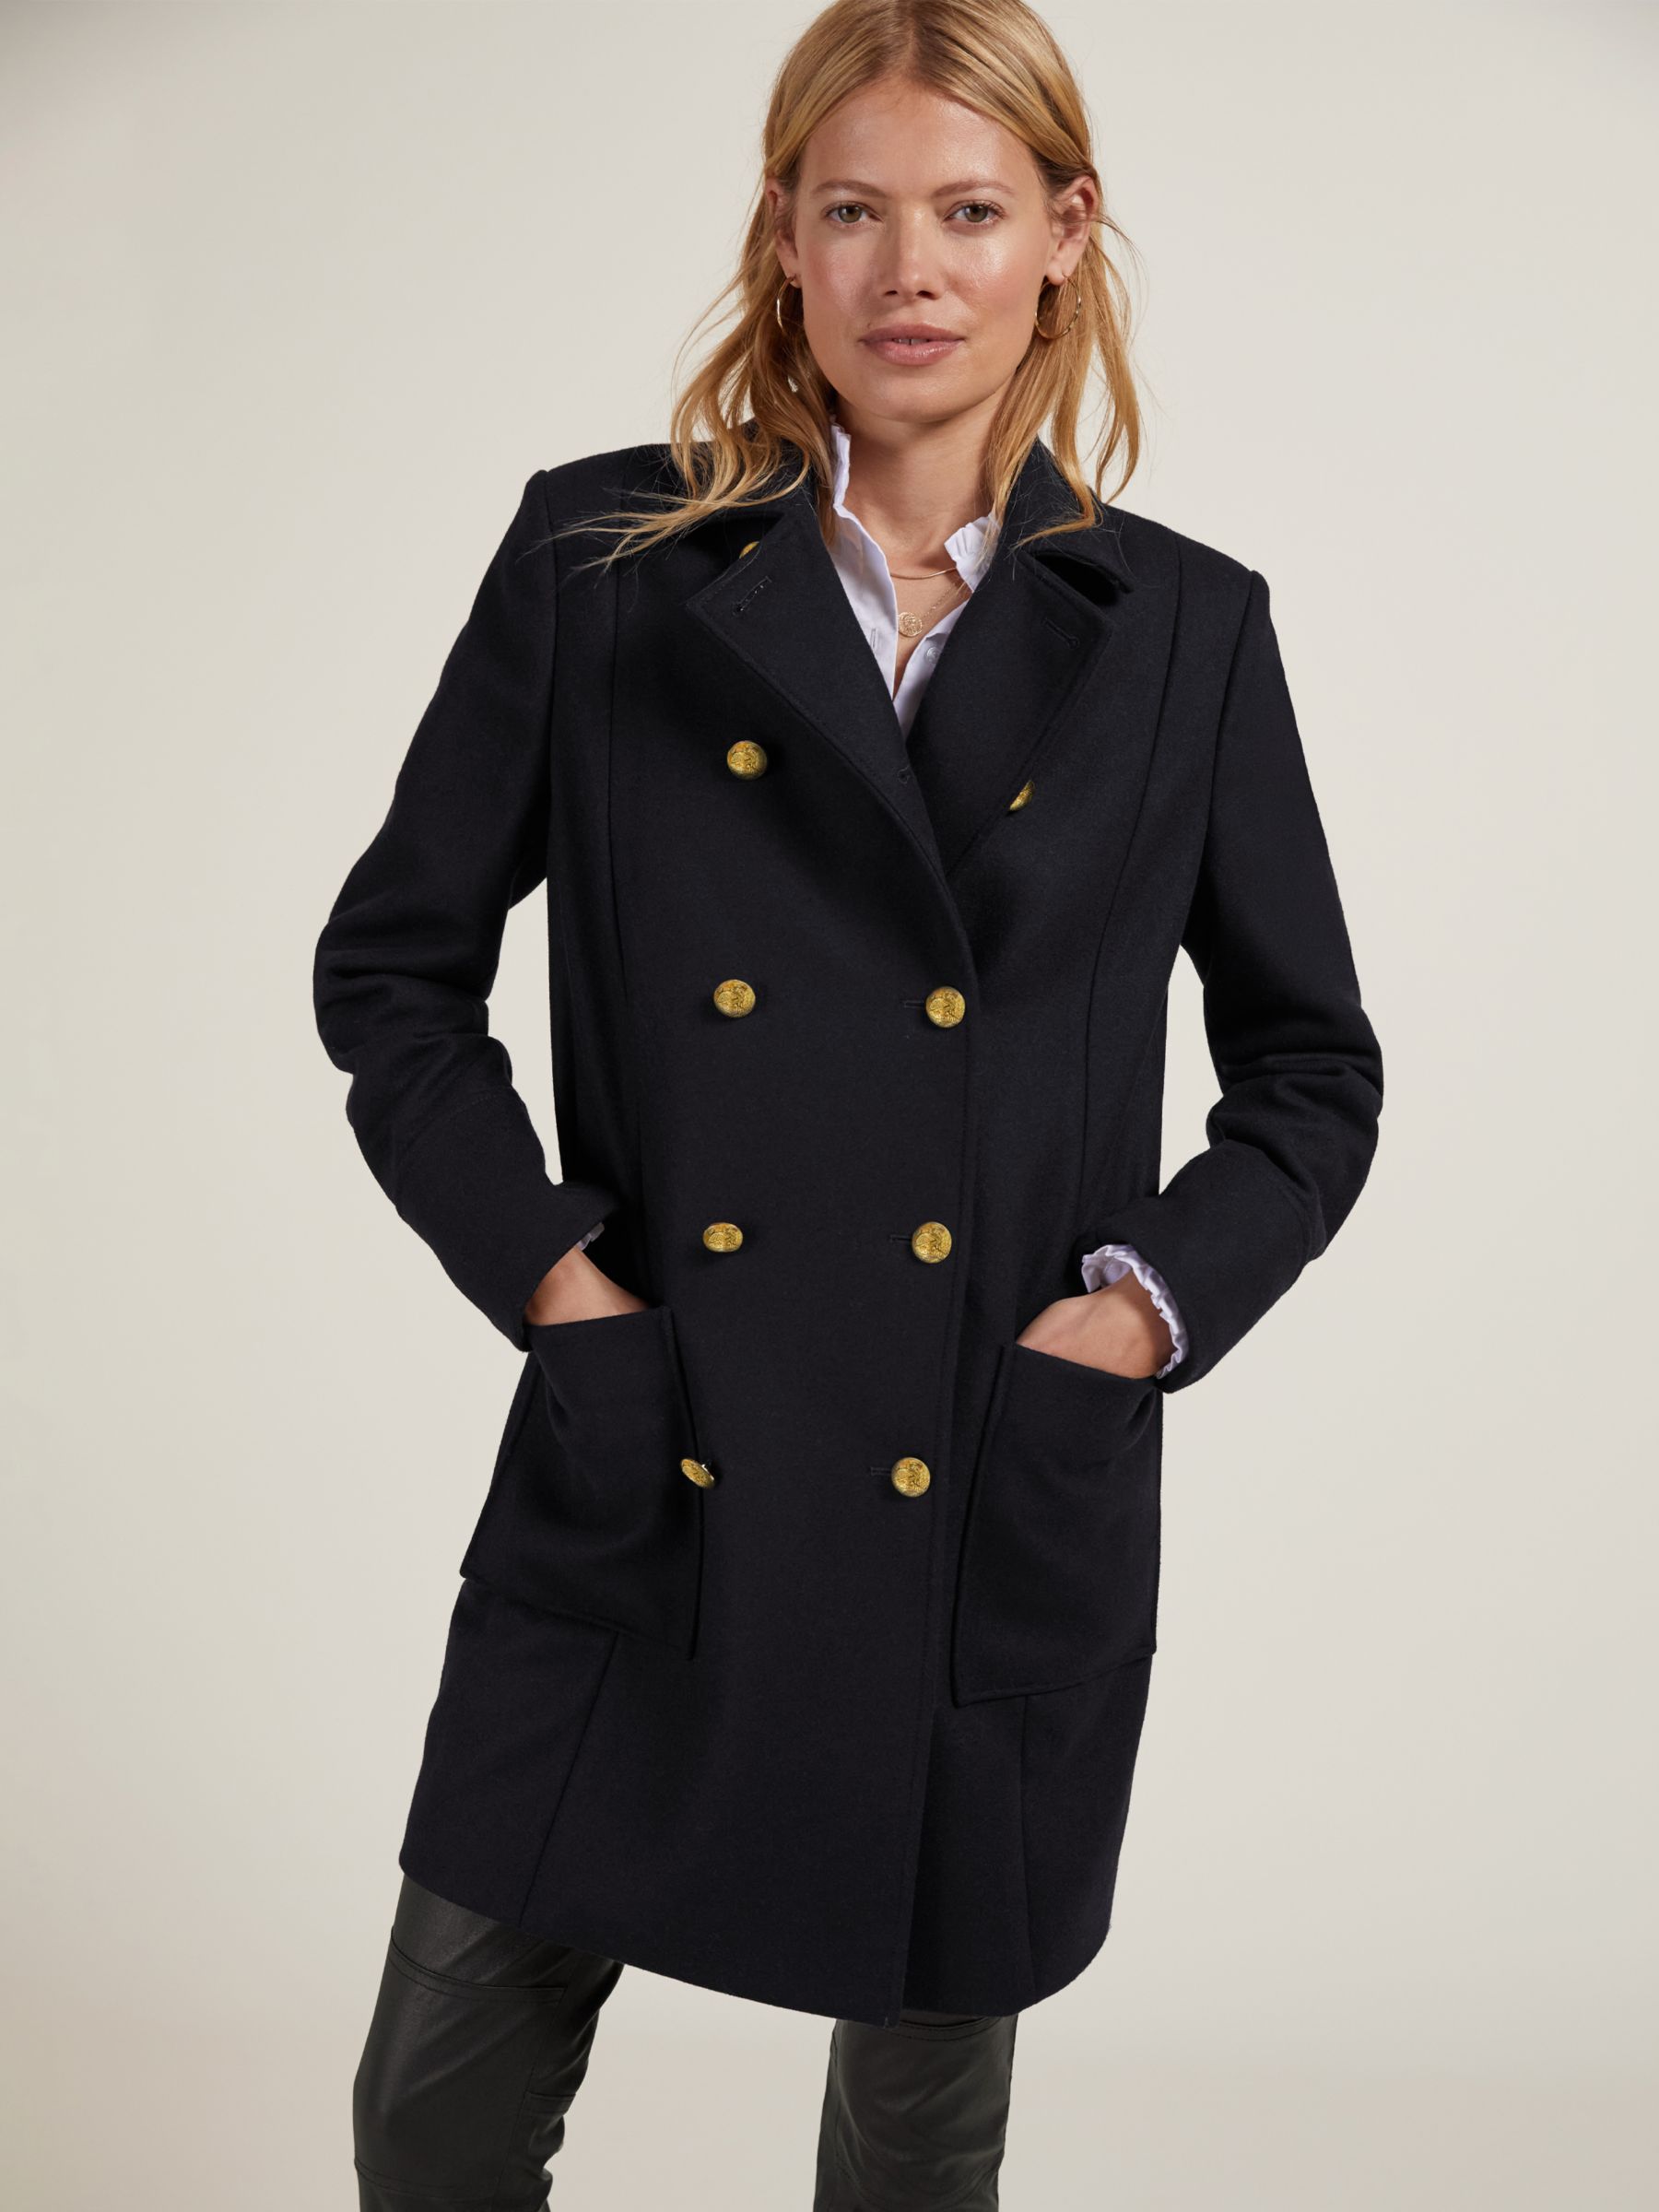 Buy Baukjen Chitra Wool Blend Coat, Classic Navy Online at johnlewis.com